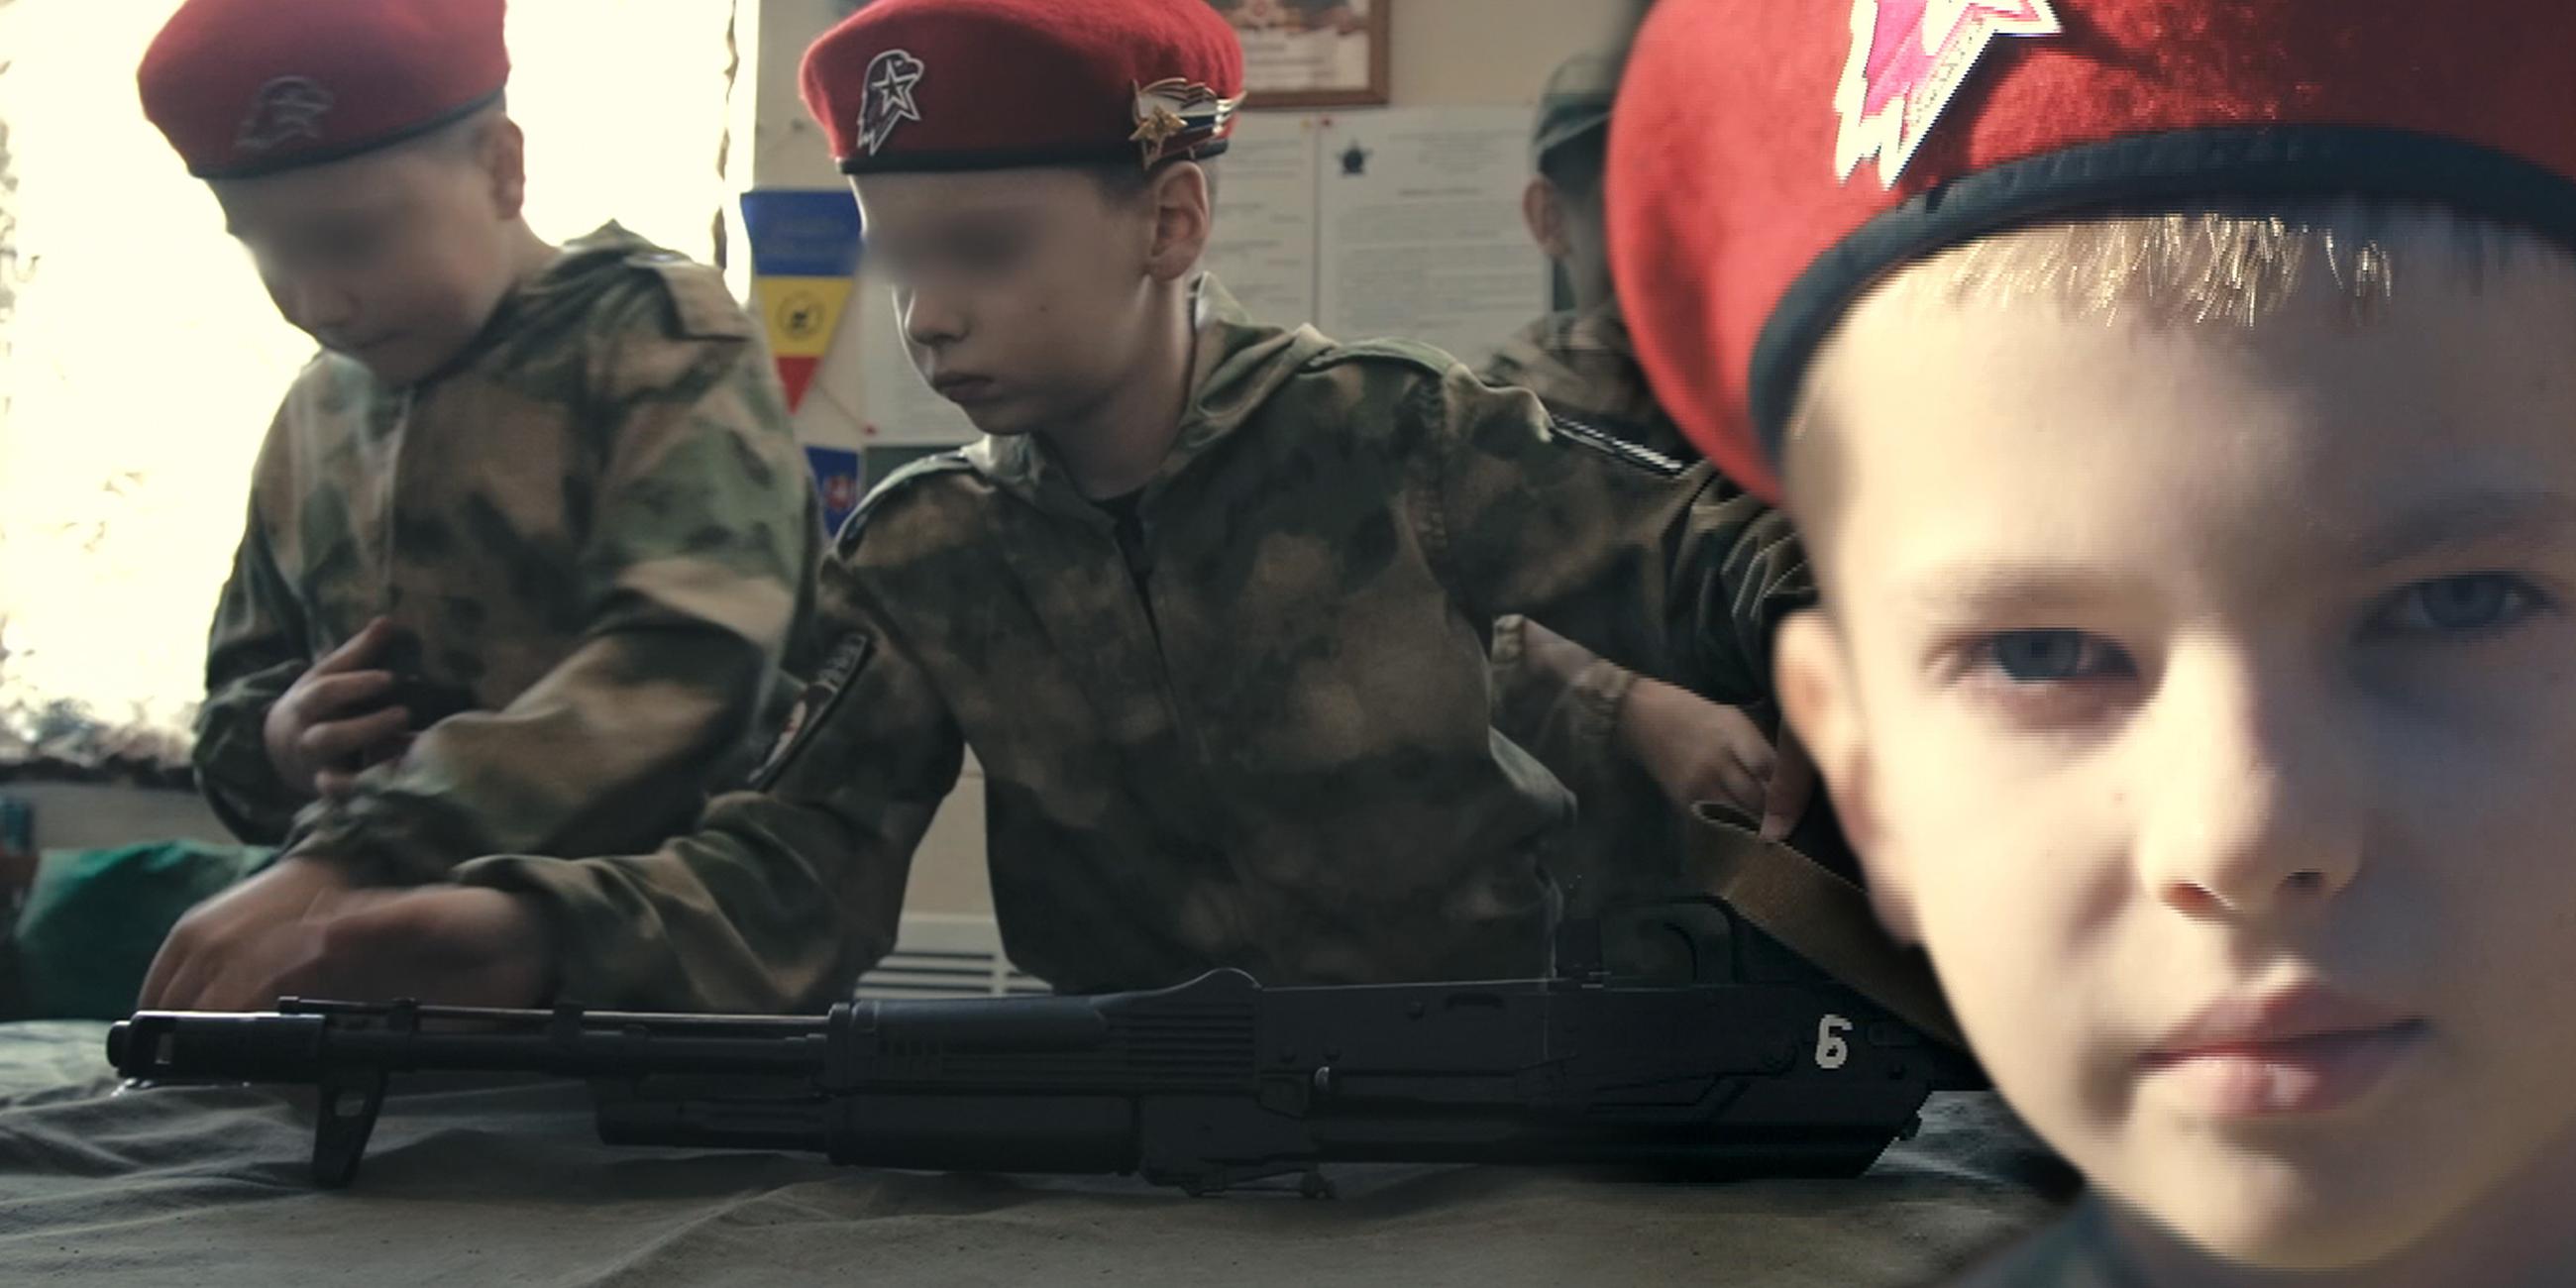 Montage: Kinder werden an Waffen ausgebildet